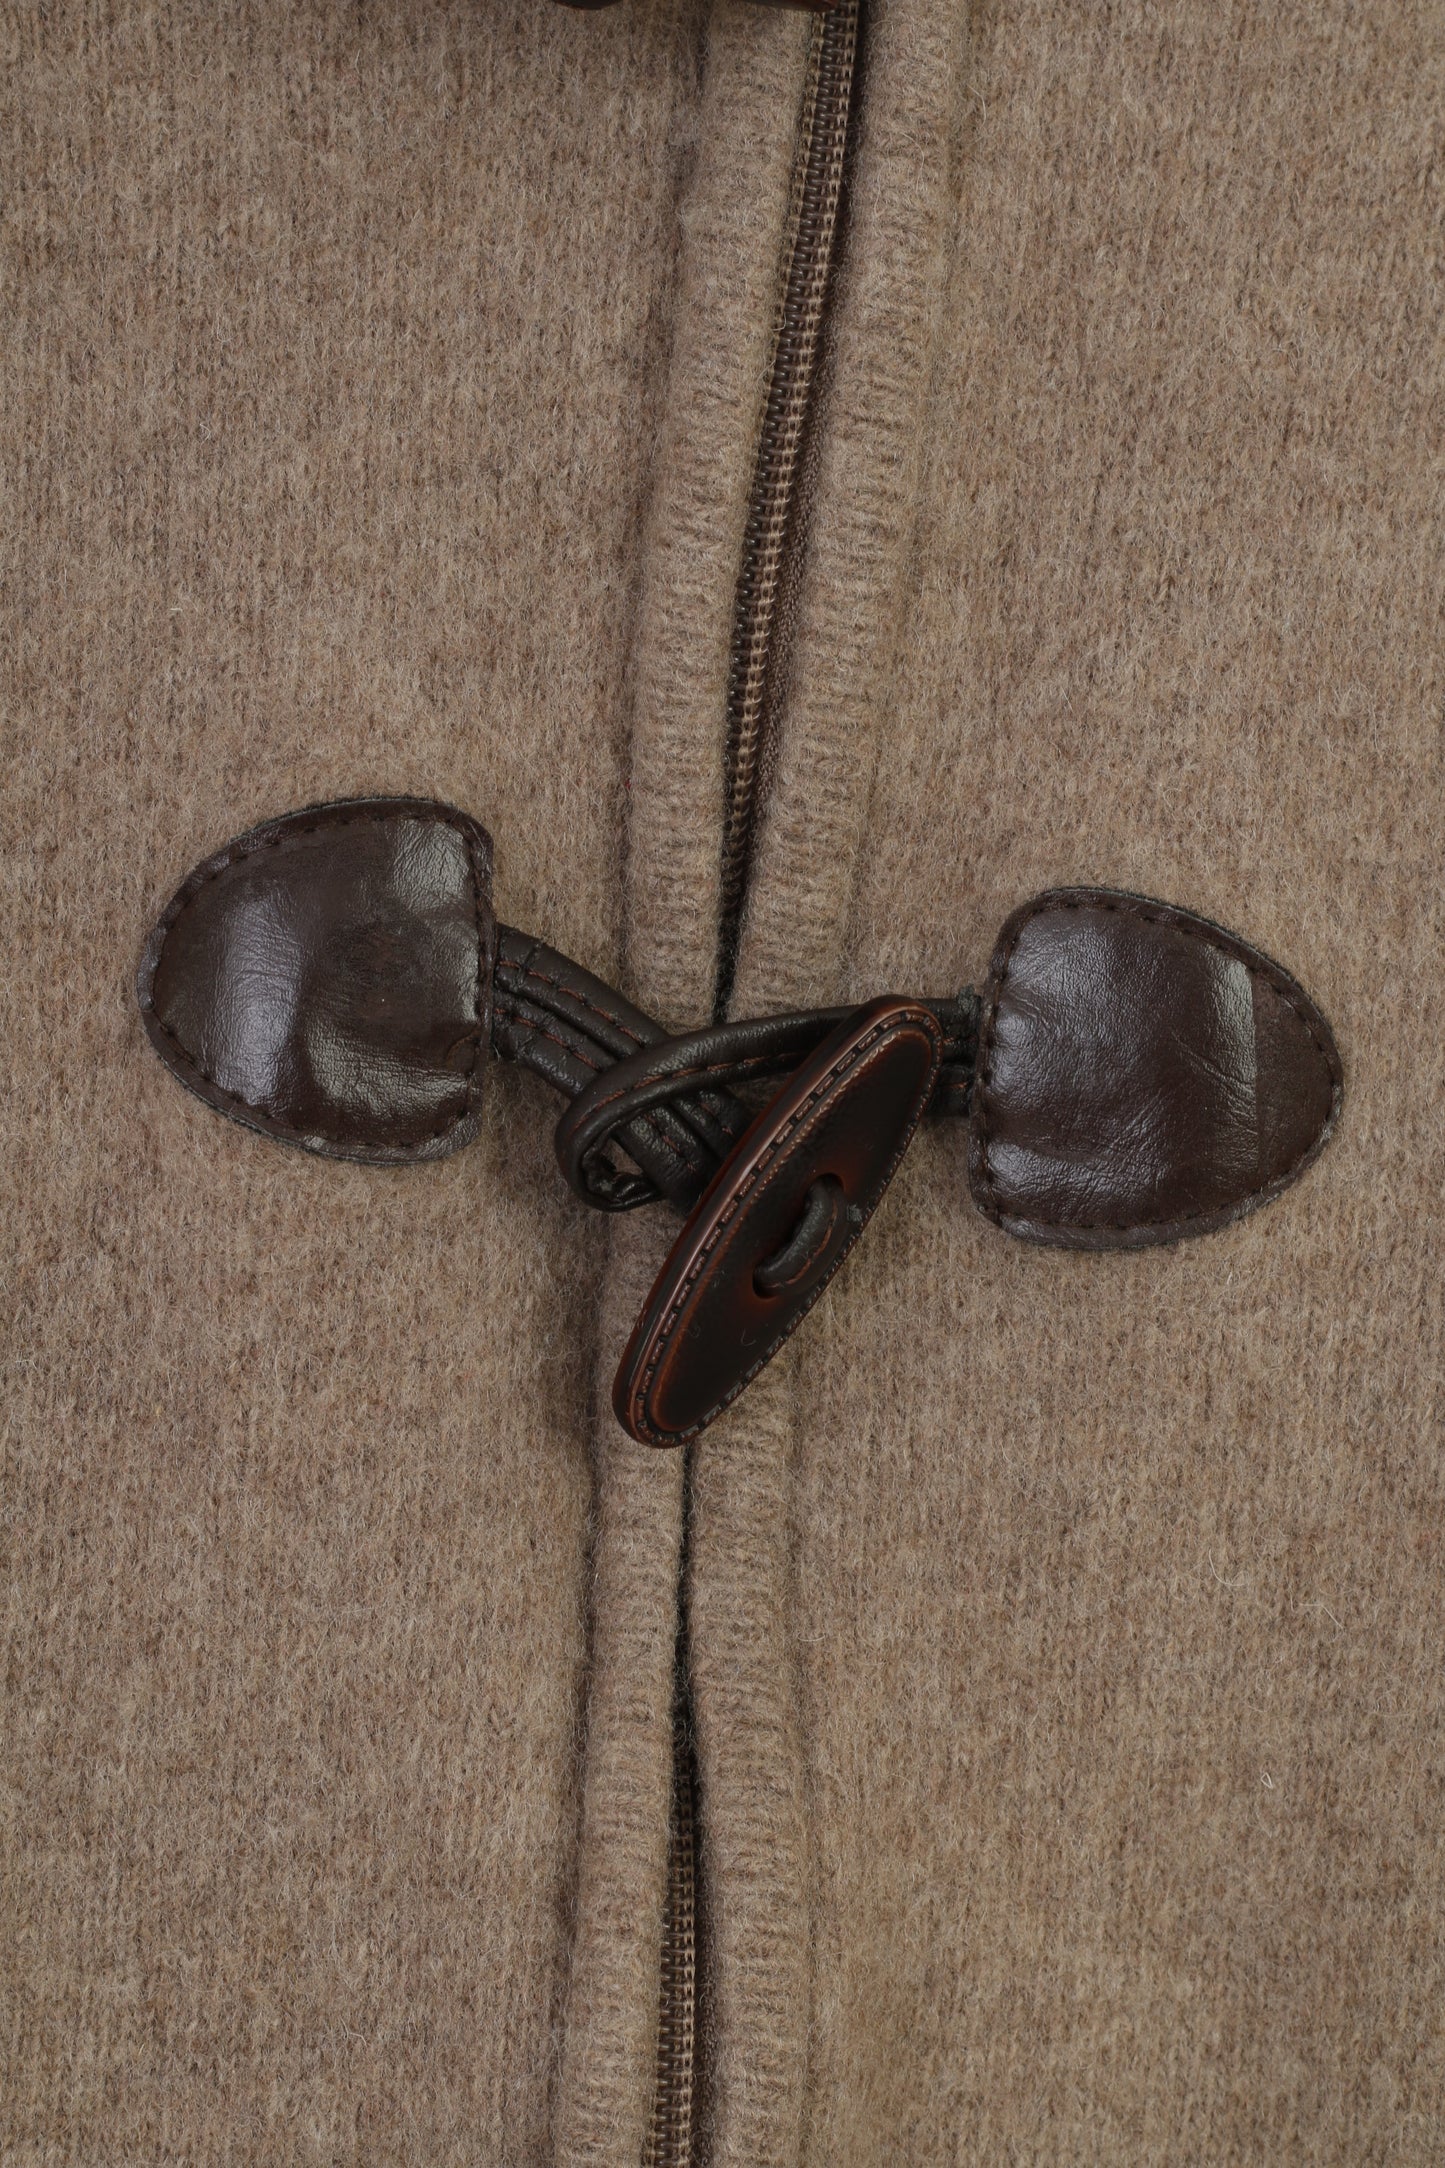 Jezequel Boys L Kids  Sweatshirt Brown Wool Full Zipper Long Sleeve Buttons Collar Top